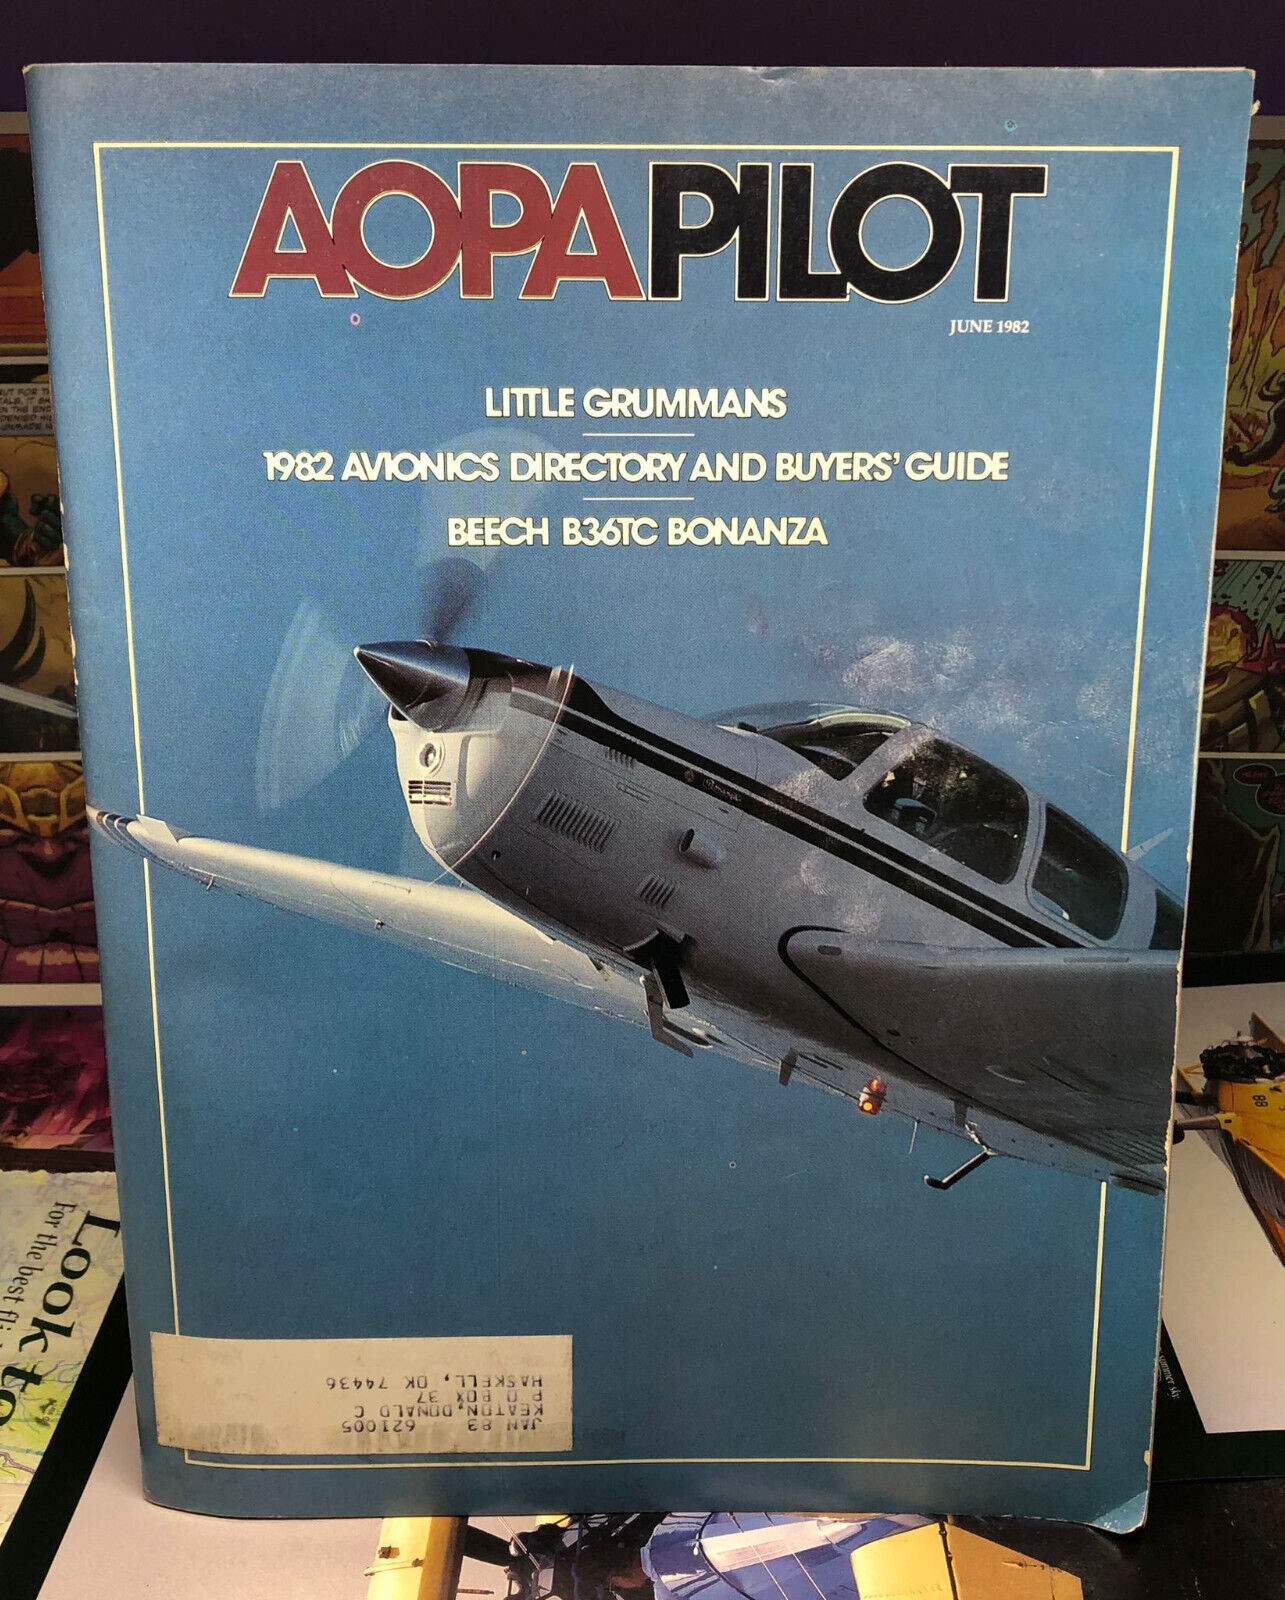 Aopa Pilot Magazine - June 1982, Little Grumman\'s, Beech B36TC Bonanza